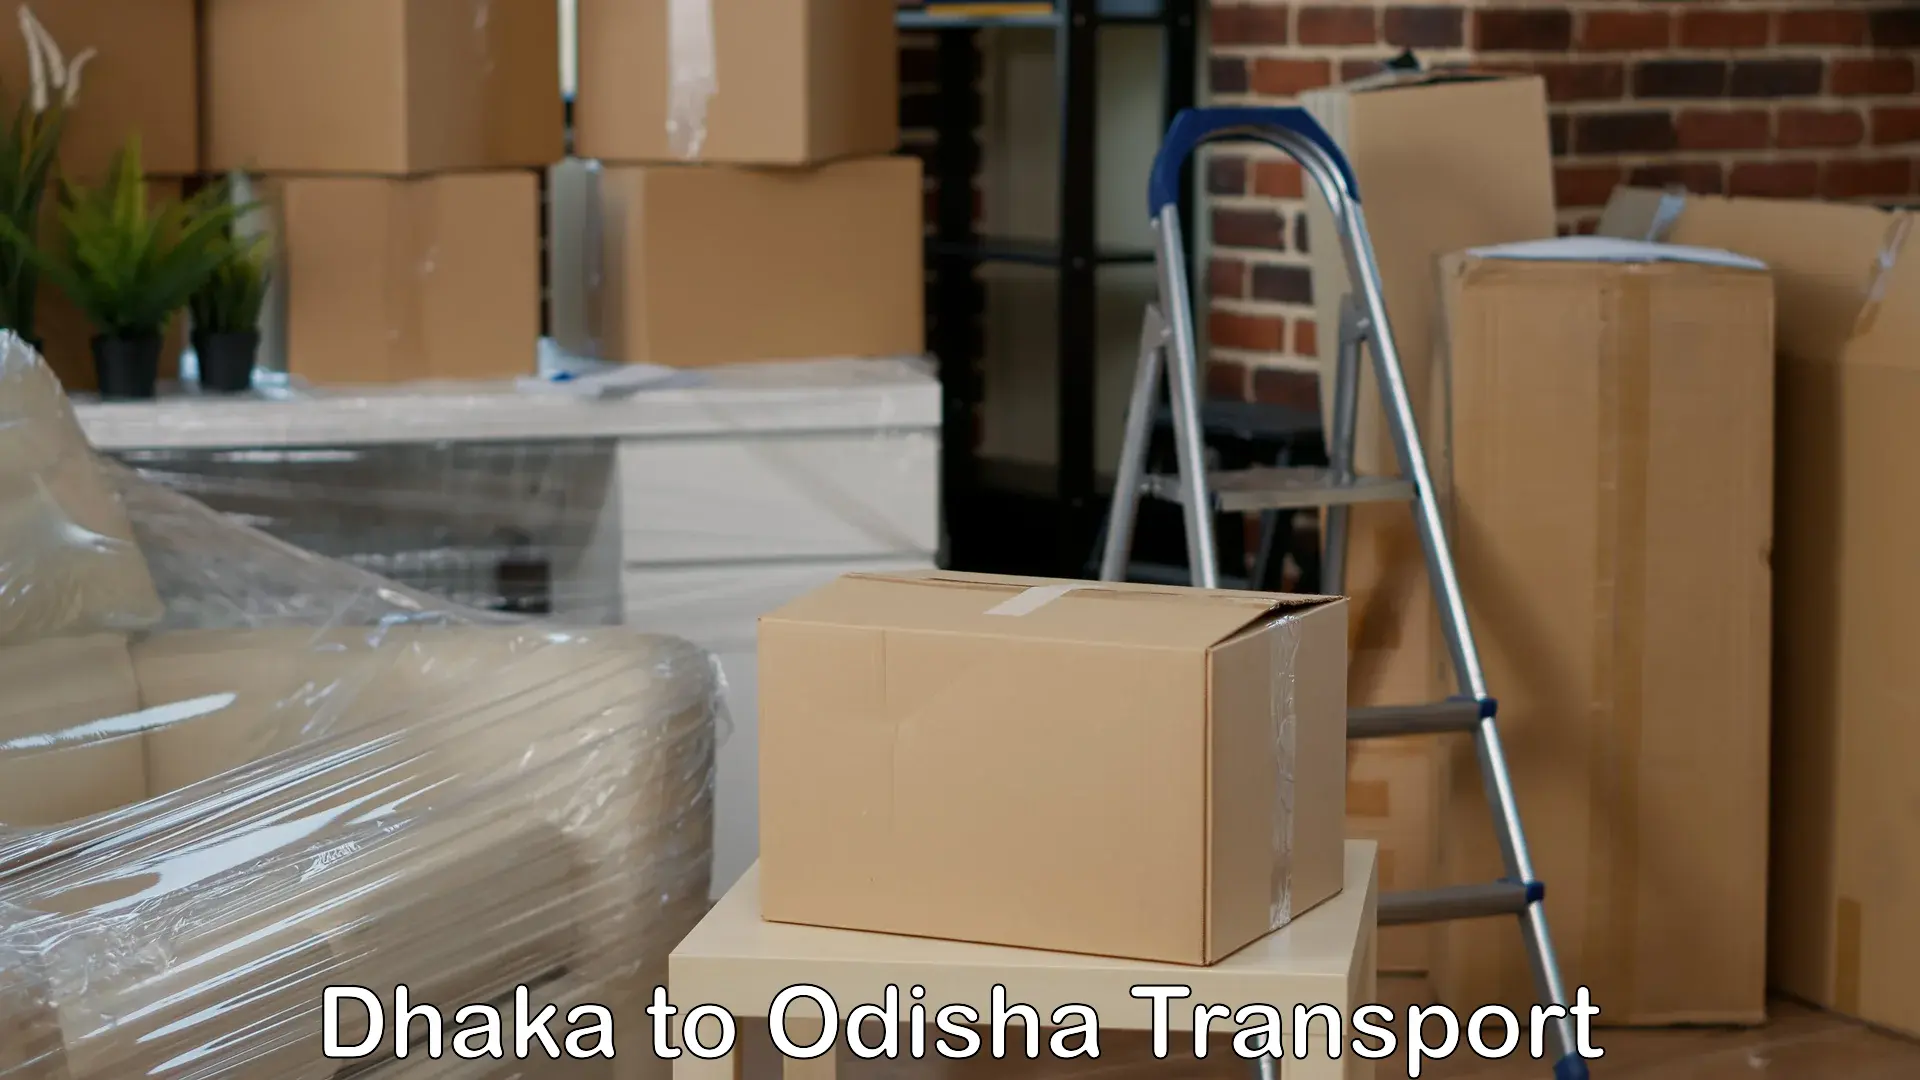 Cargo transportation services Dhaka to Tihidi